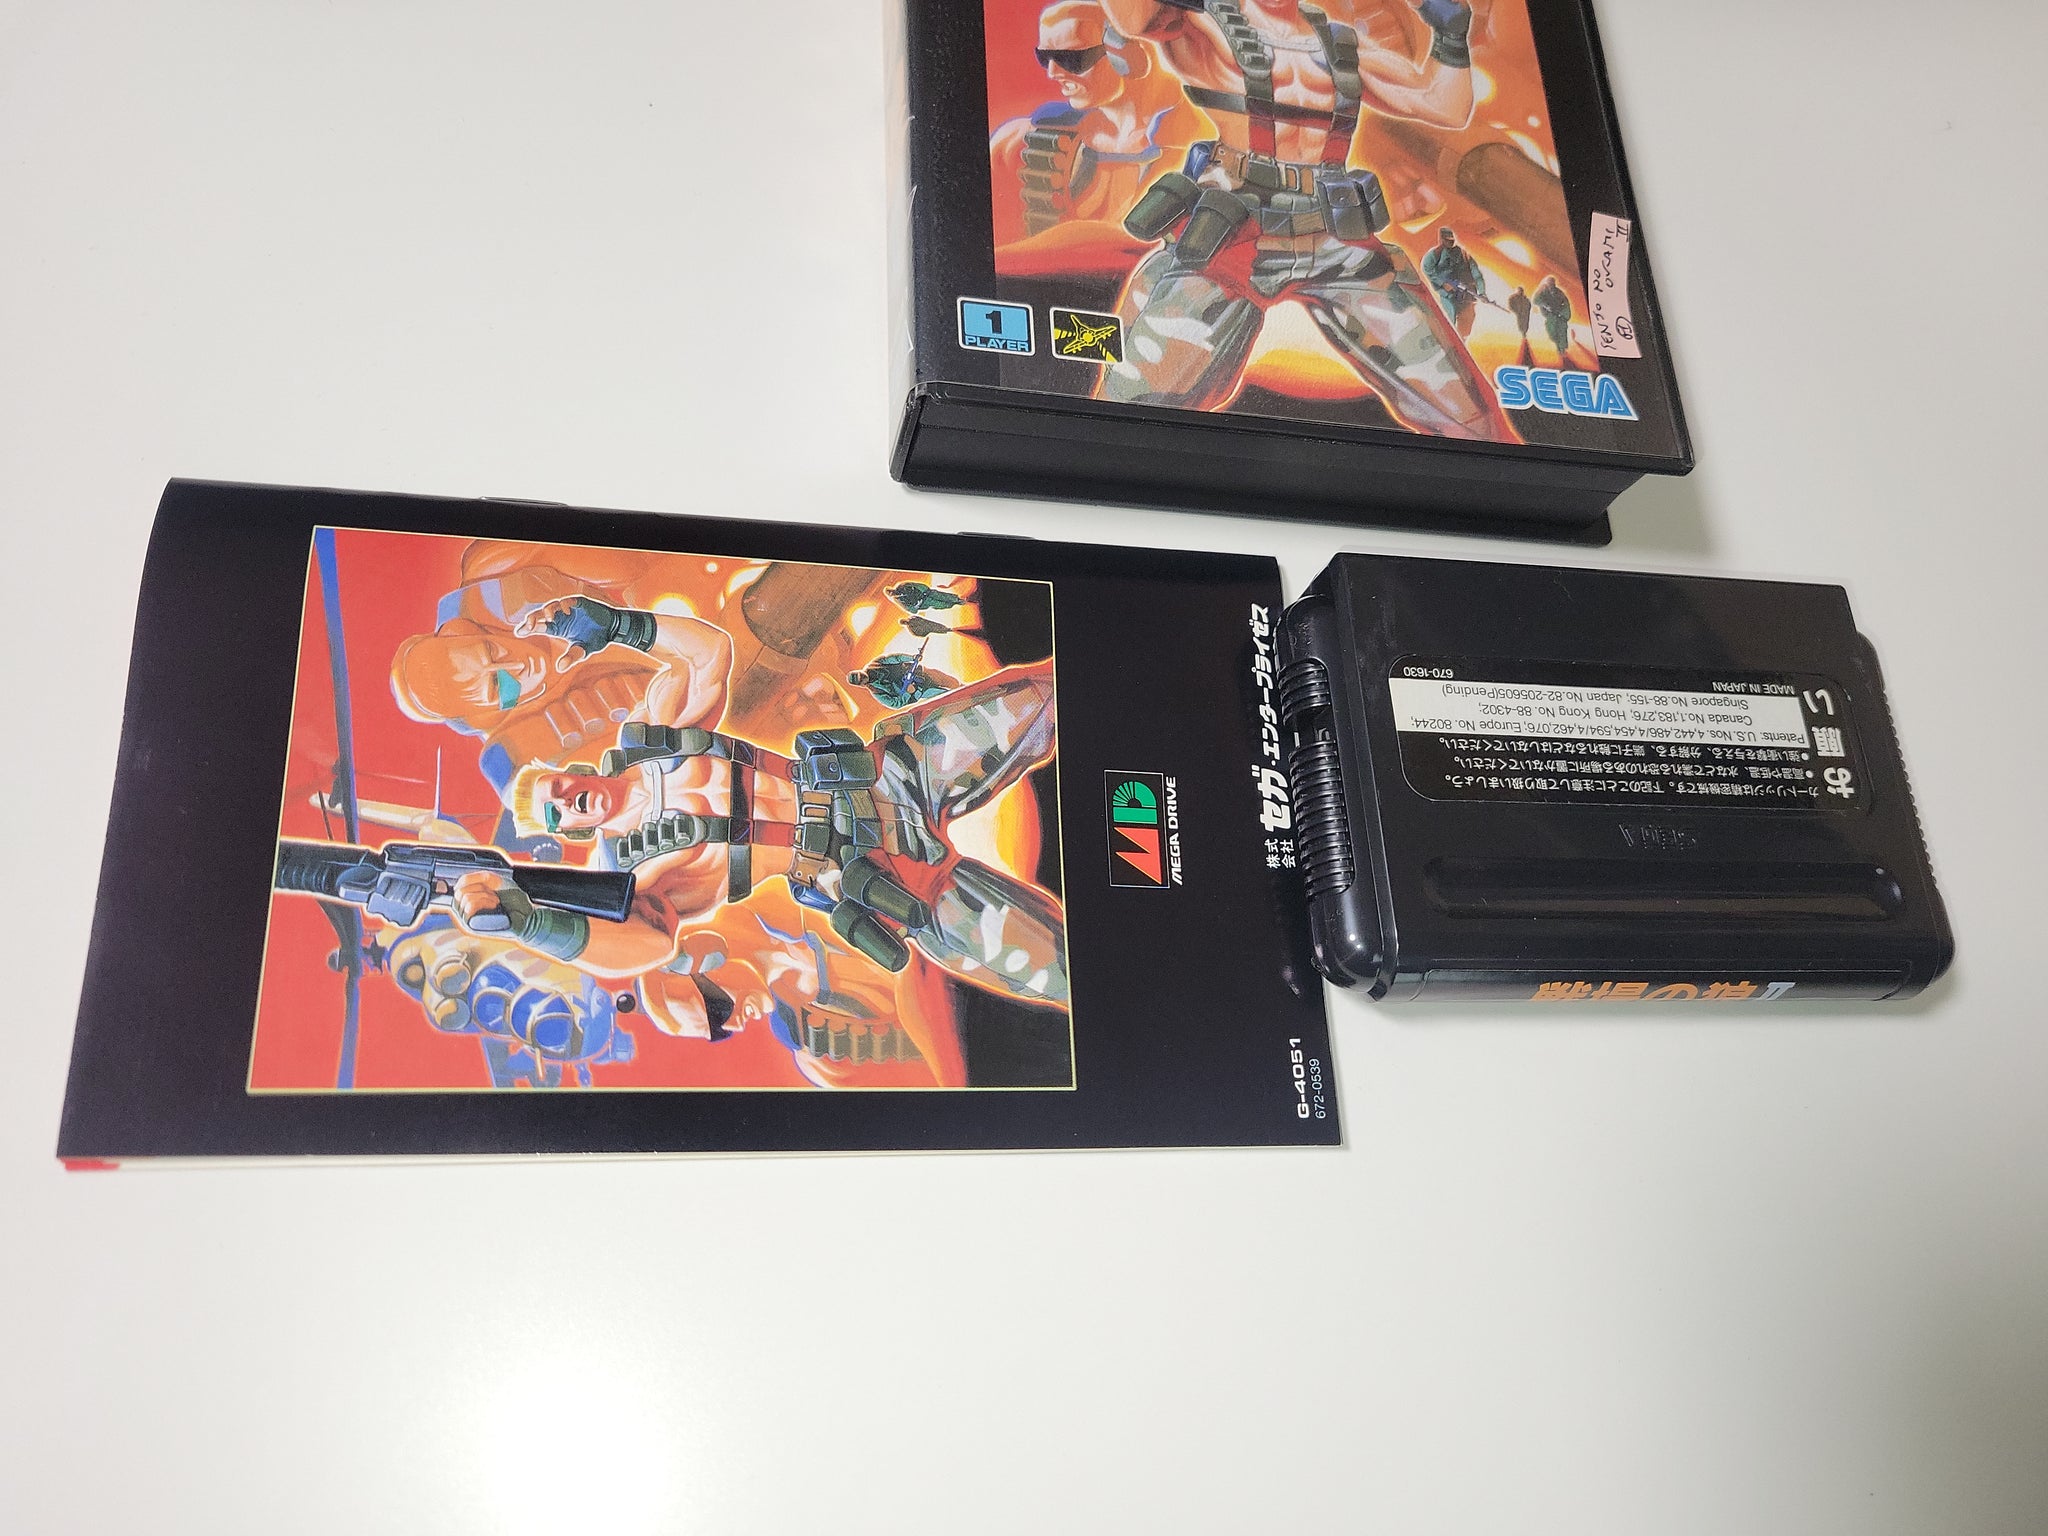 Senjo no Okami II / Mercs - Sega MD MegaDrive – The Emporium